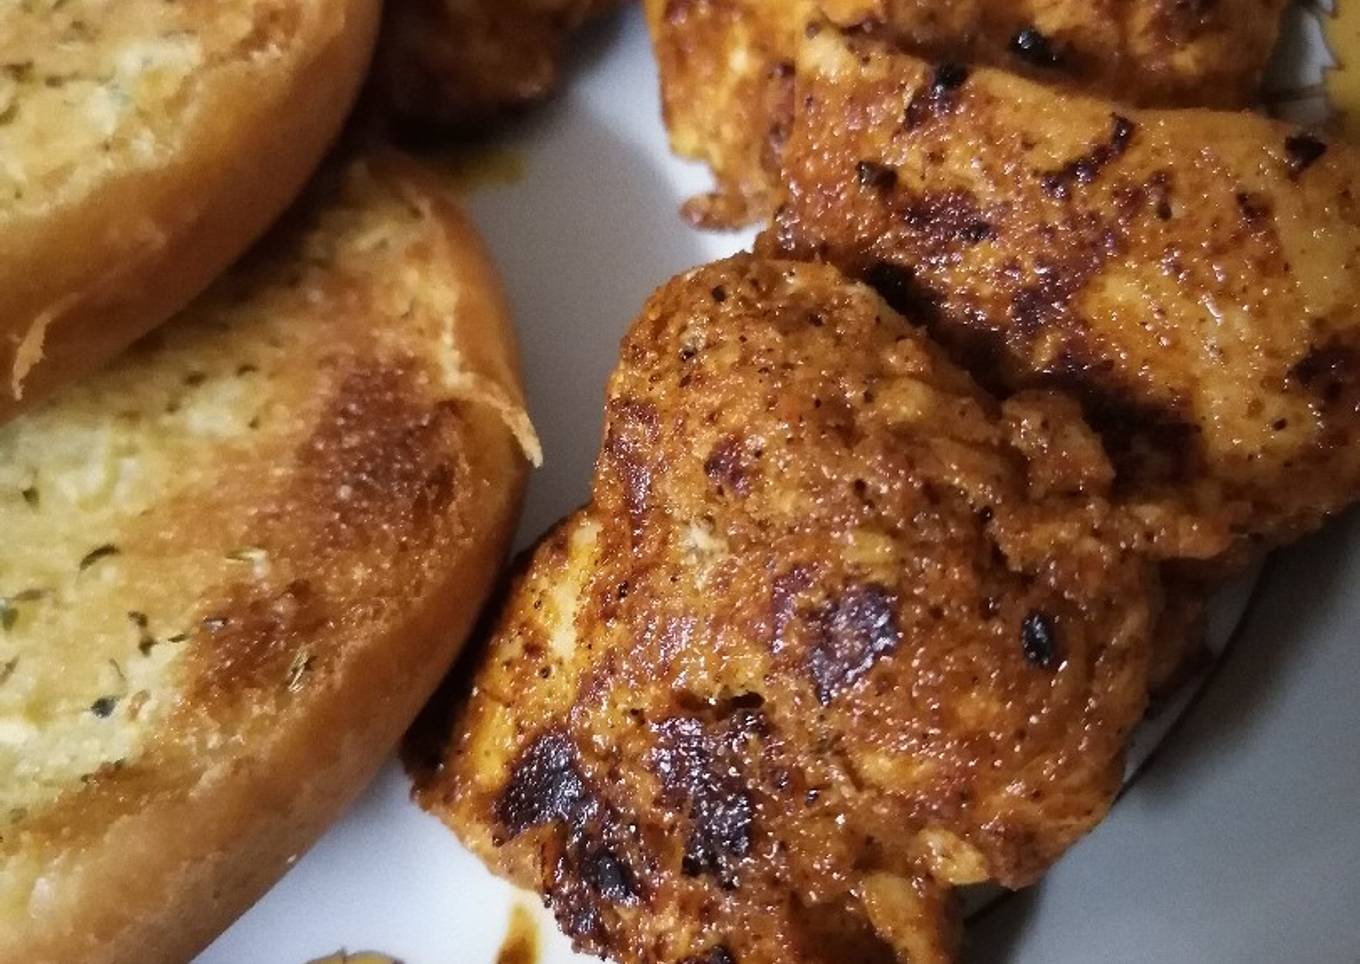 Hot Chicken with garlic bread ðŸžðŸ—ðŸ”